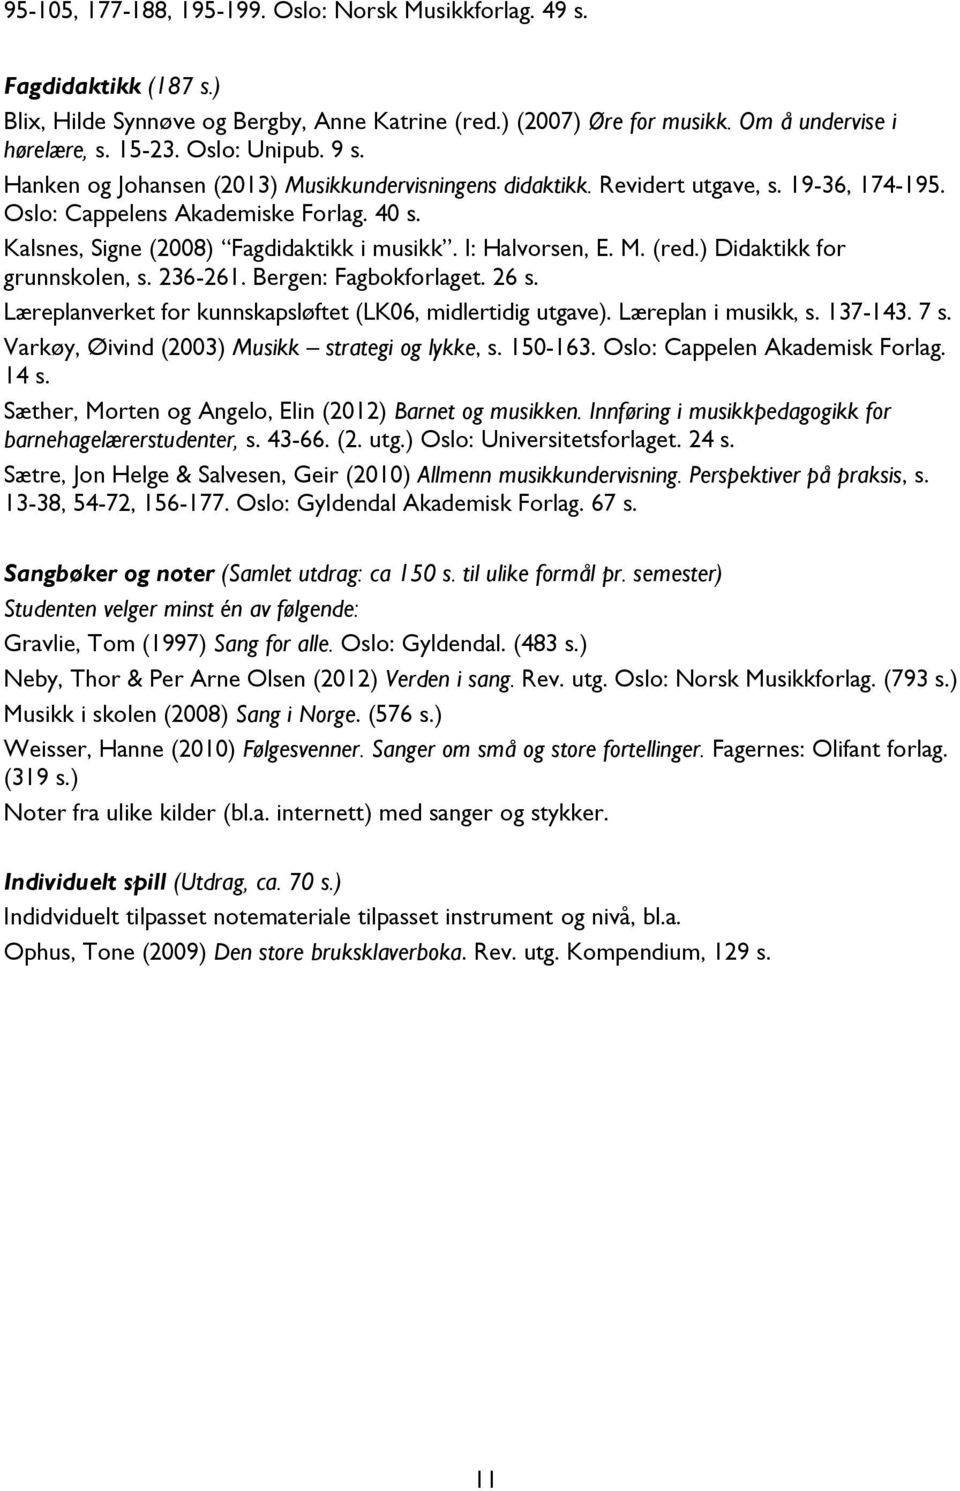 I: Halvorsen, E. M. (red.) Didaktikk for grunnskolen, s. 236-261. Bergen: Fagbokforlaget. 26 s. Læreplanverket for kunnskapsløftet (LK06, midlertidig utgave). Læreplan i musikk, s. 137-143. 7 s.